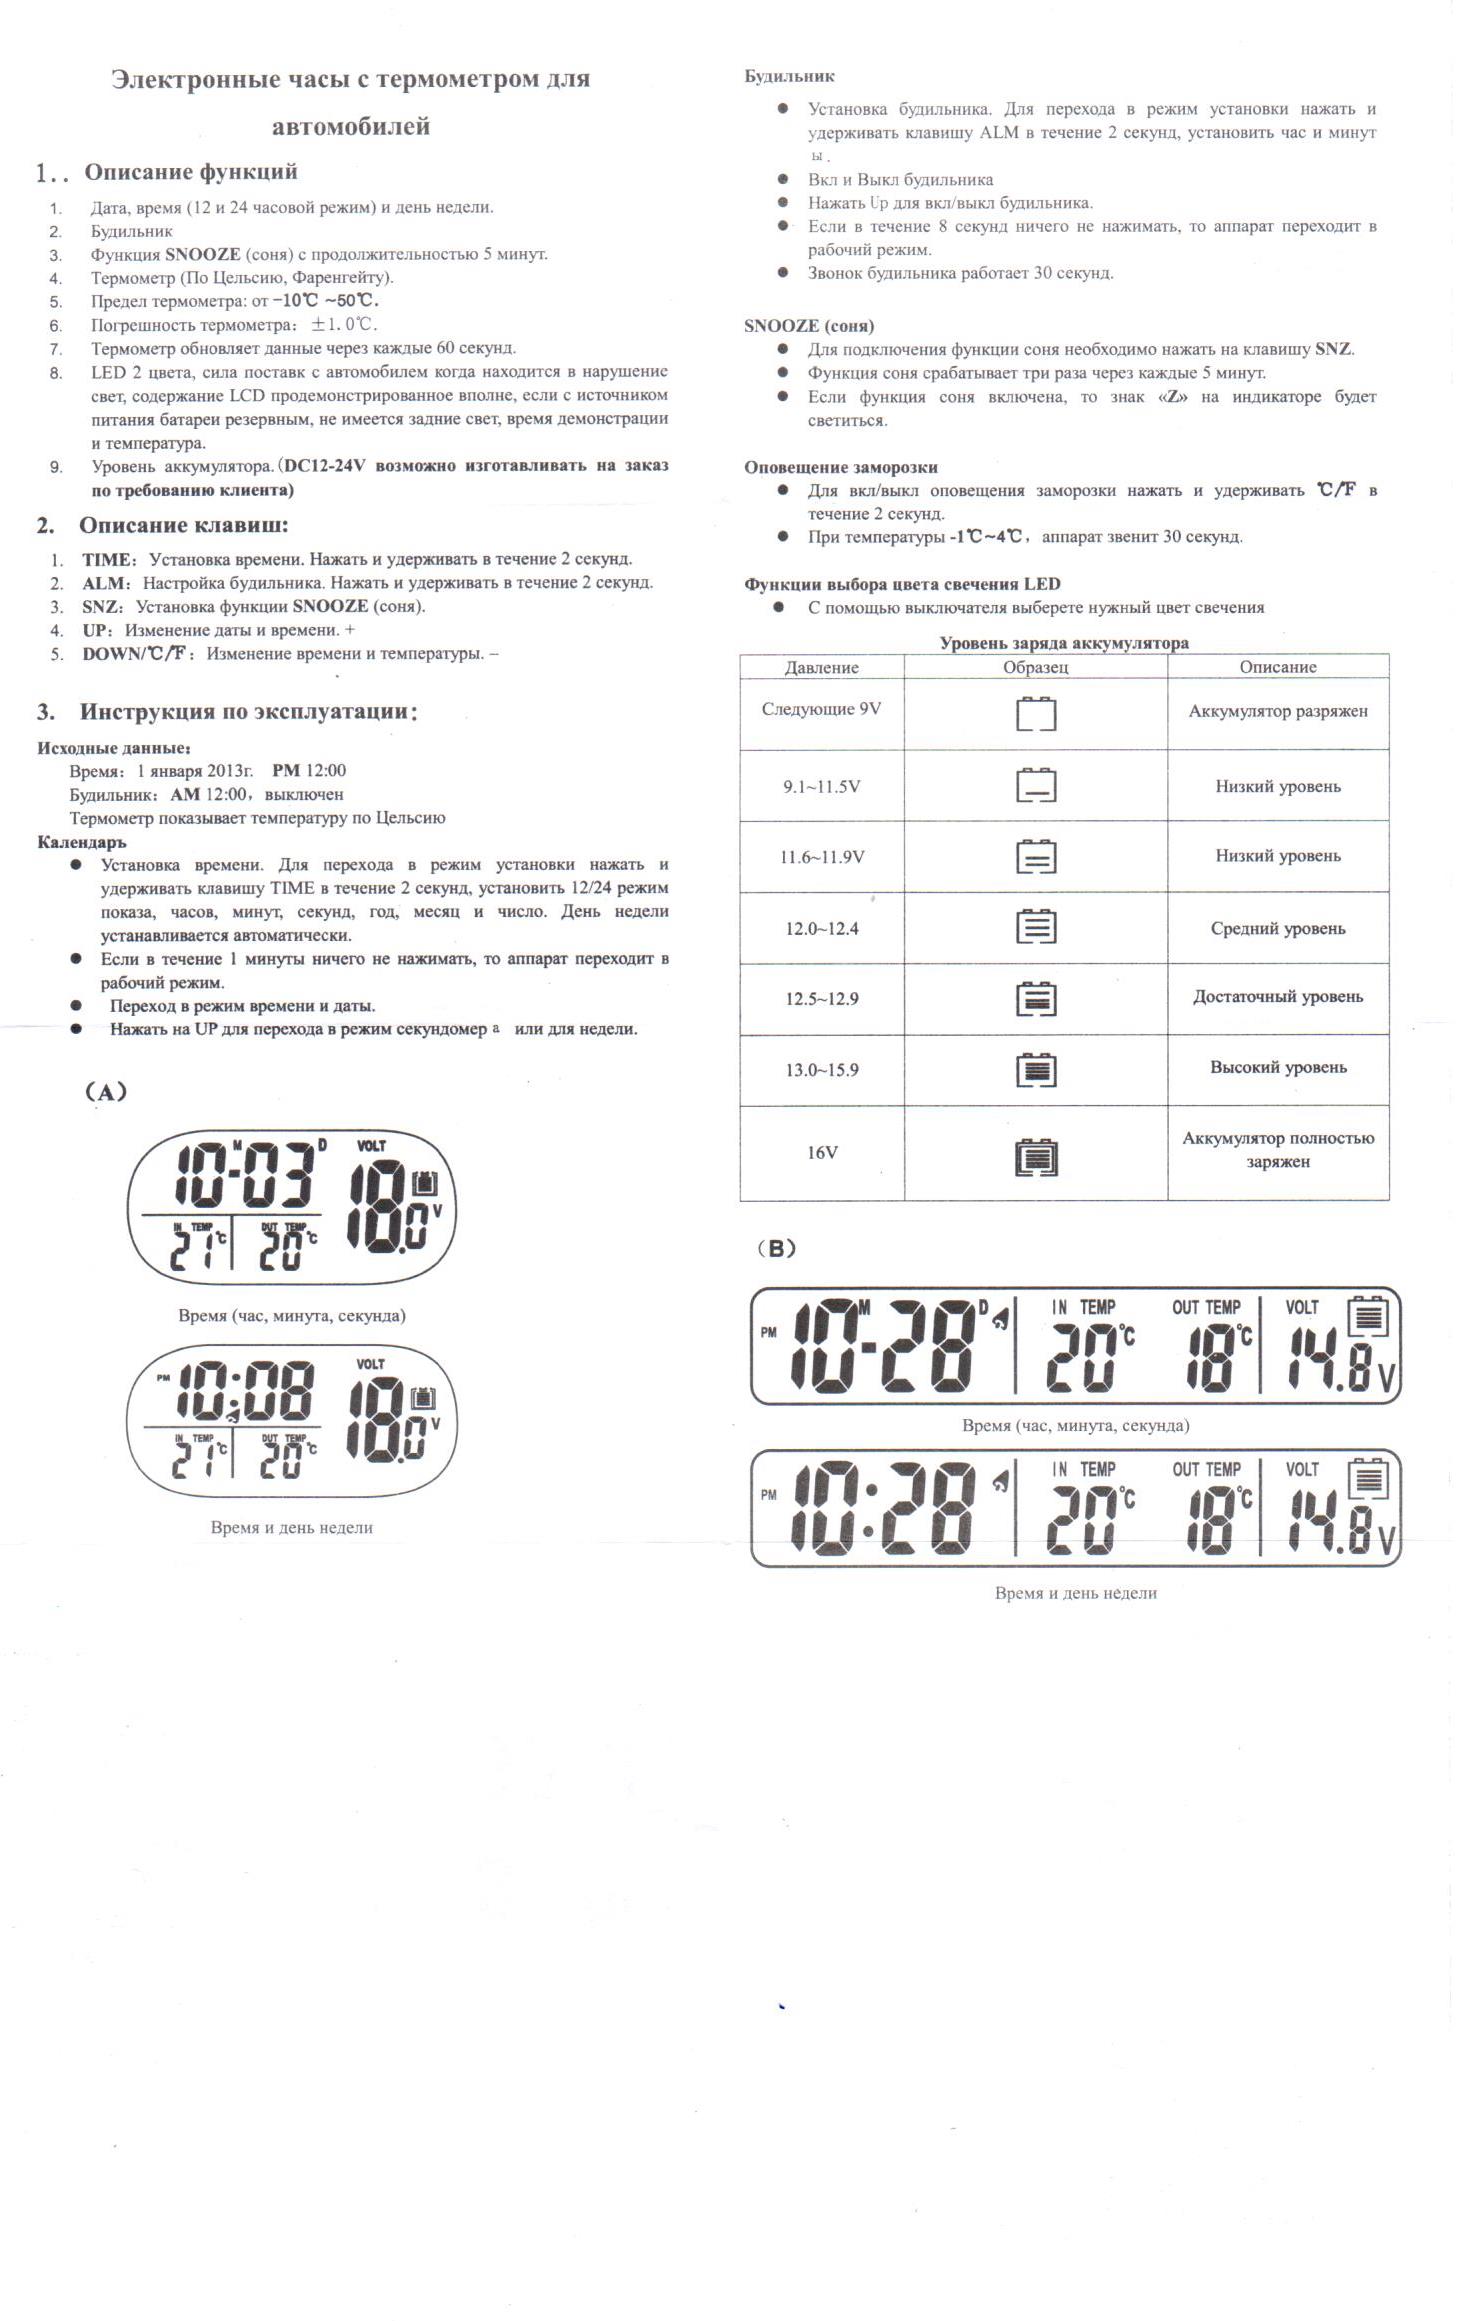 Как настроить деревянные часы. Электронные часы VST-7050. Электронные часы VST 729 инструкция. Инструкция по эксплуатации электронных часов VST-763w. Инструкция электронных часов VST 719.